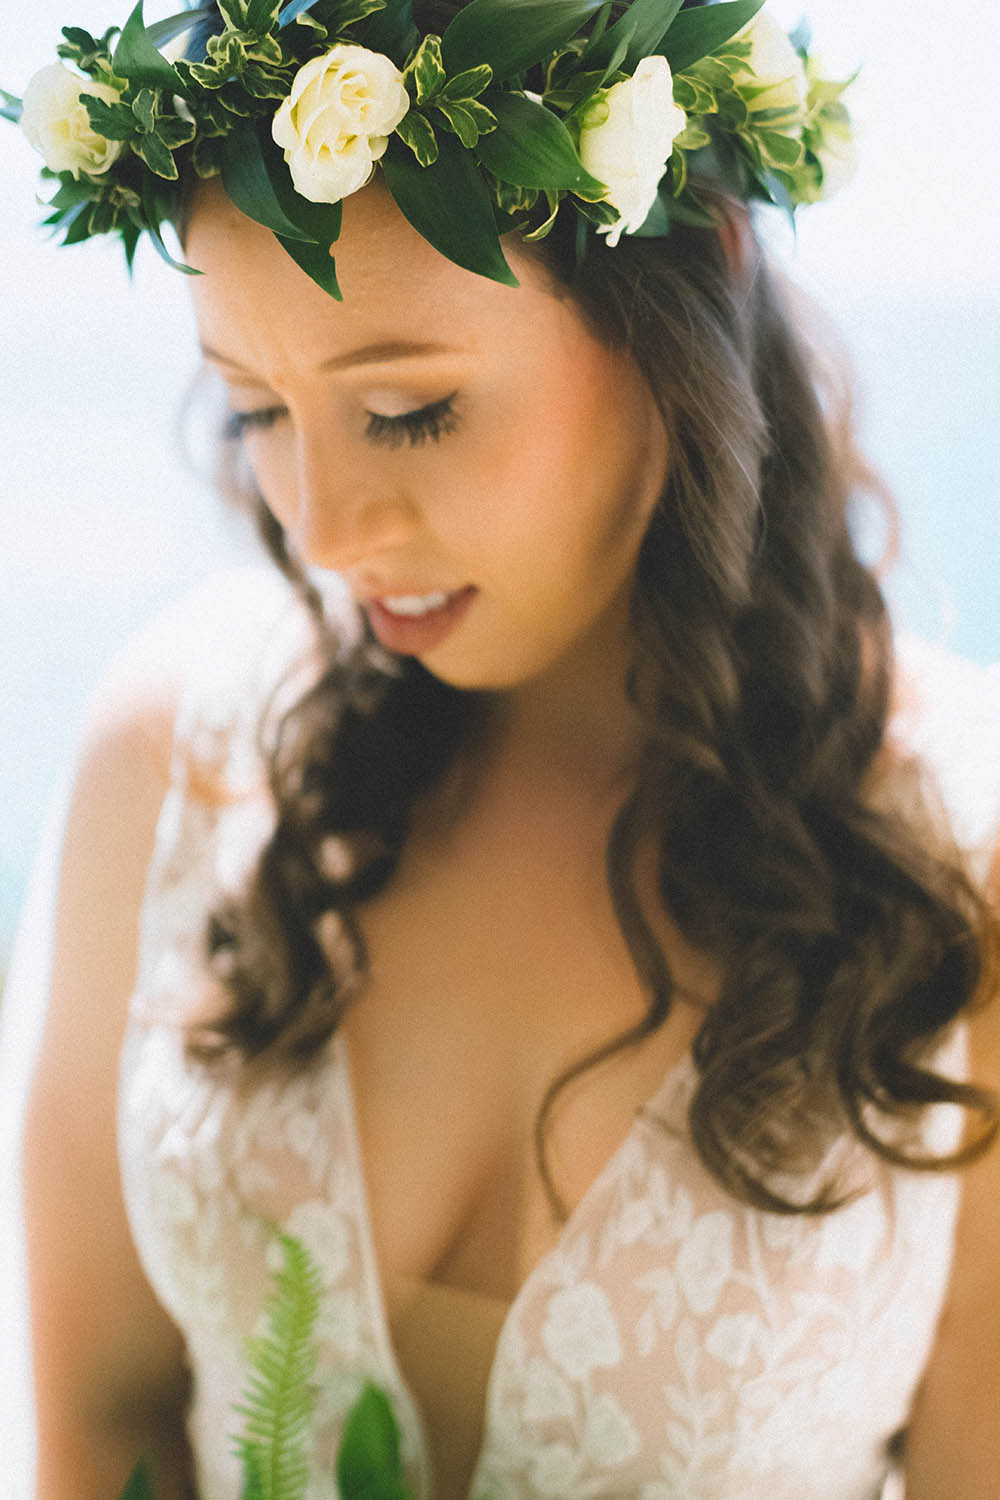 Maui wedding hair and makeup by Love & Beauty Maui